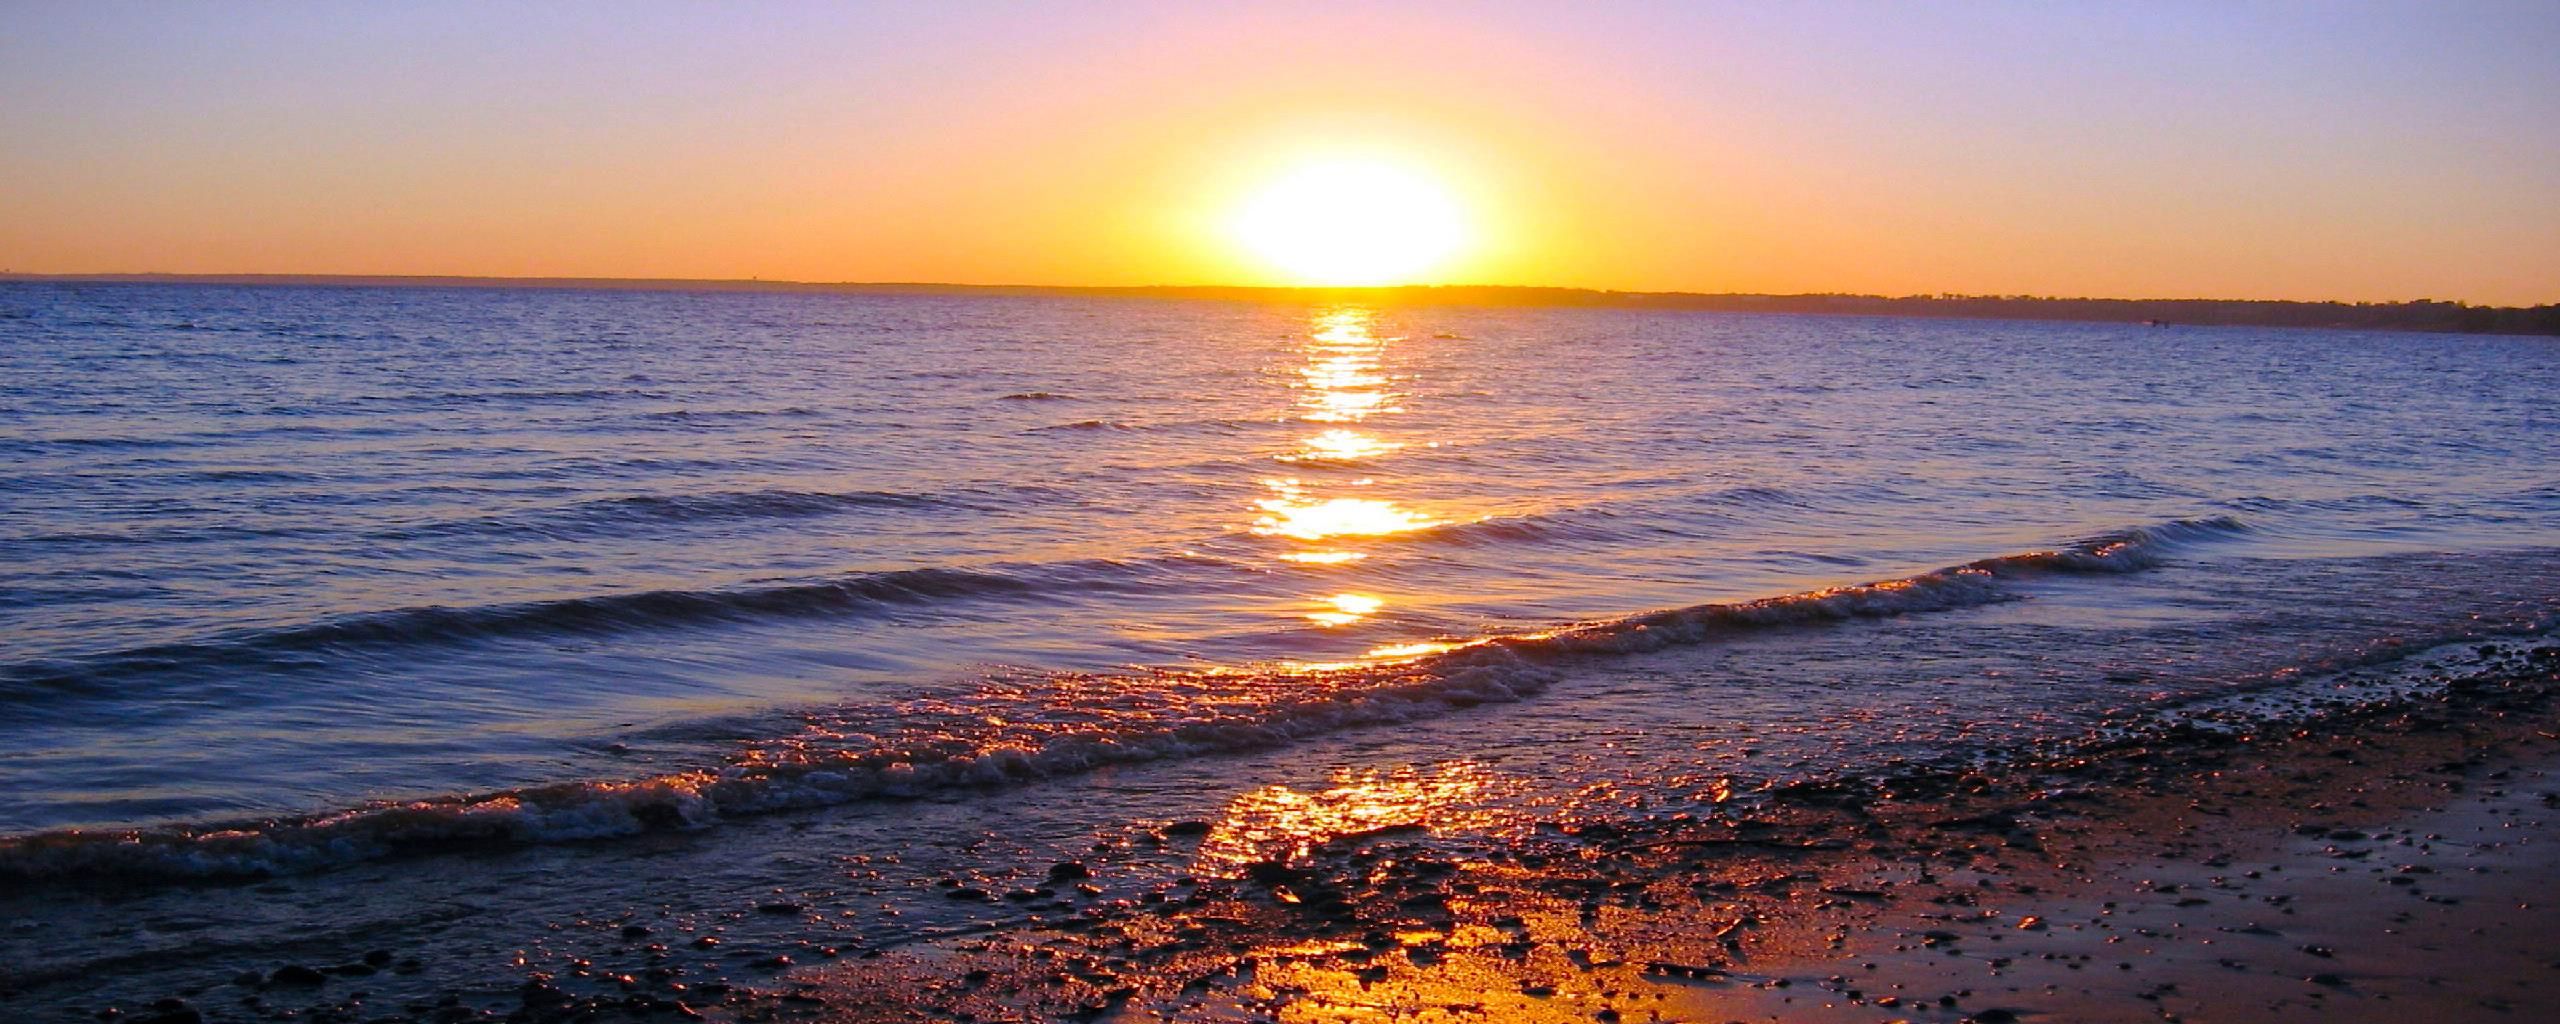 Ocean Sunset image | Randommodnar | Pinterest | Ocean sunset, Sunset ...